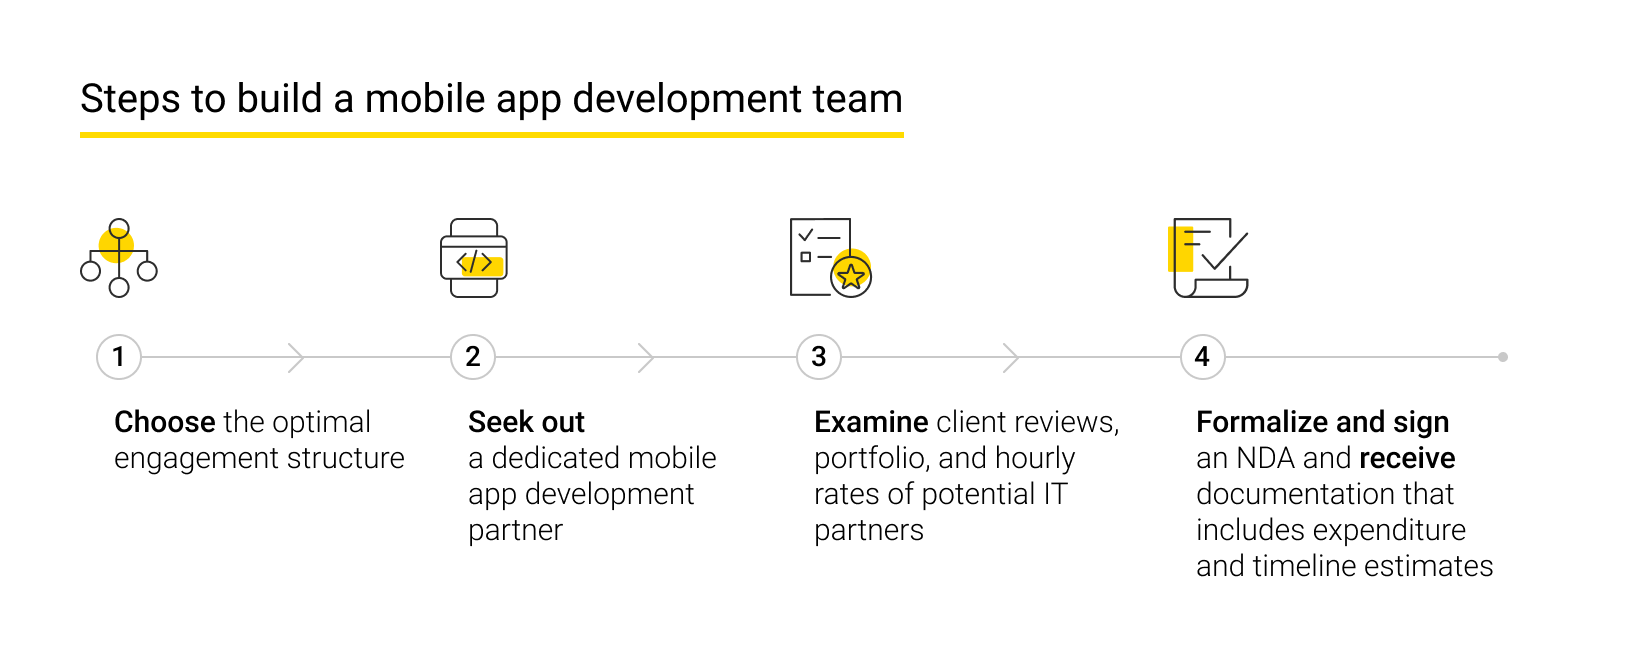 Steps to build a mobile app development team